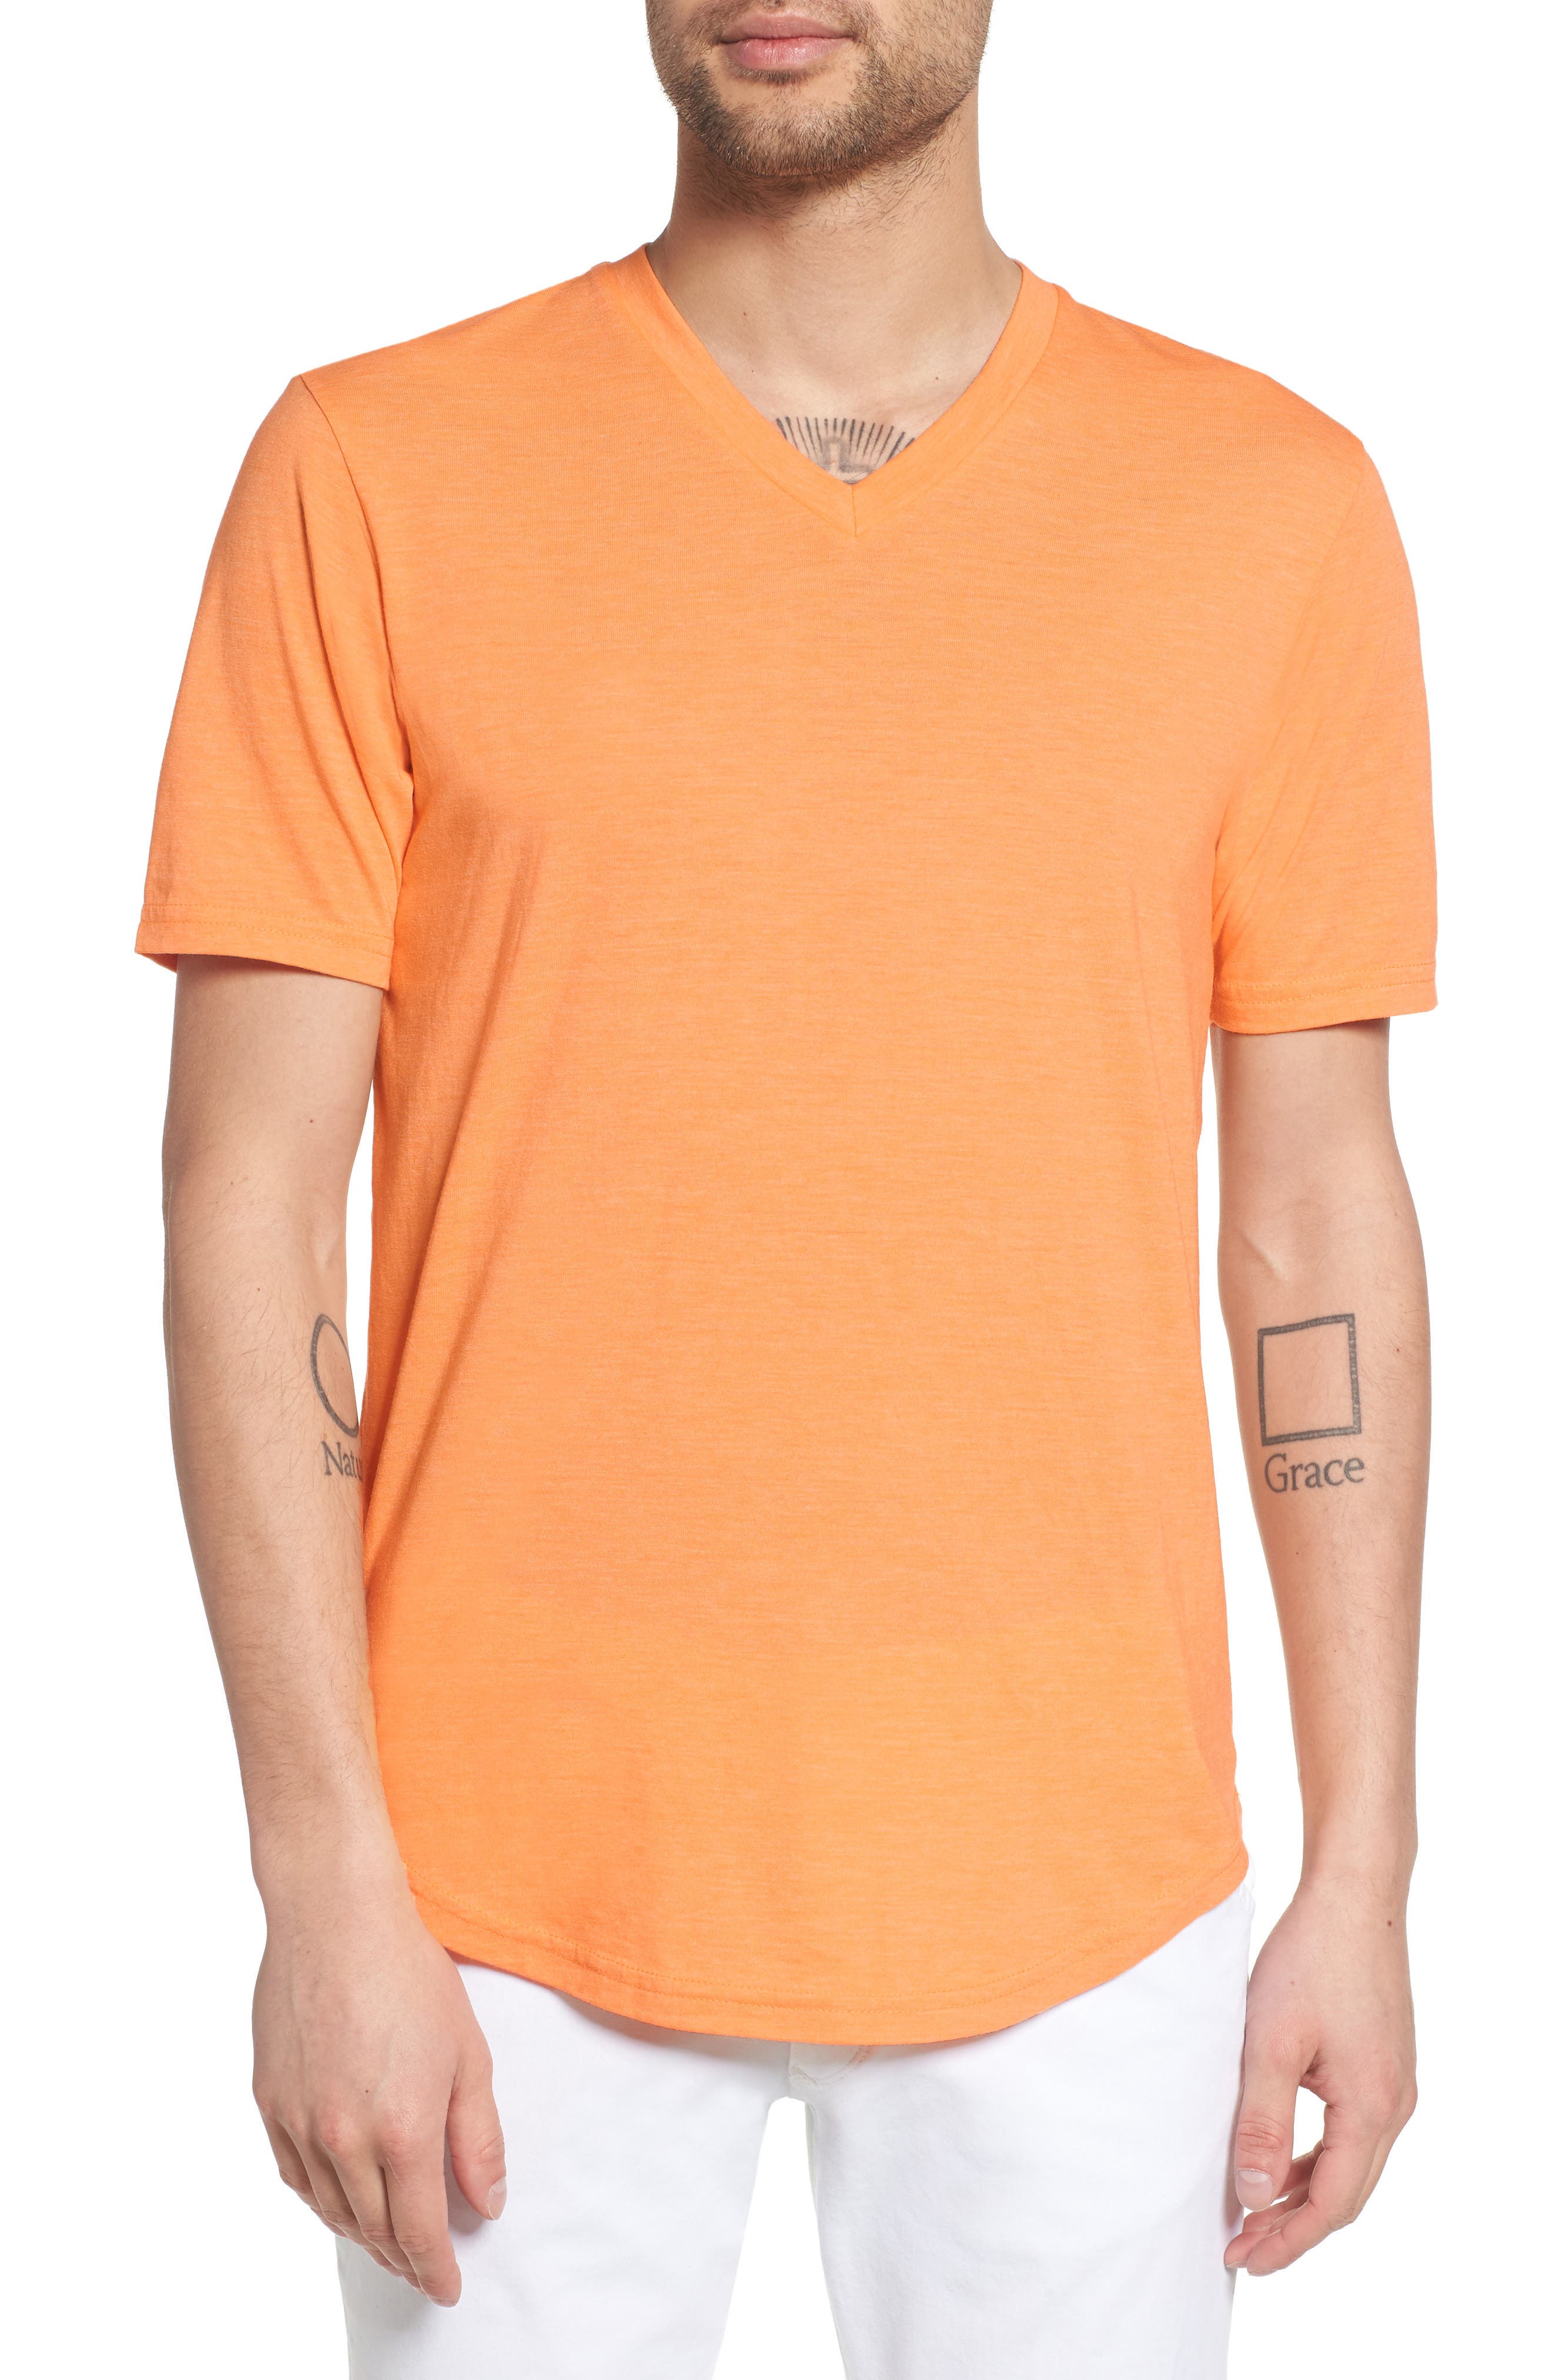 Goodlife Scallop Triblend V-neck Slim Fit T-shirt In Mock Orange